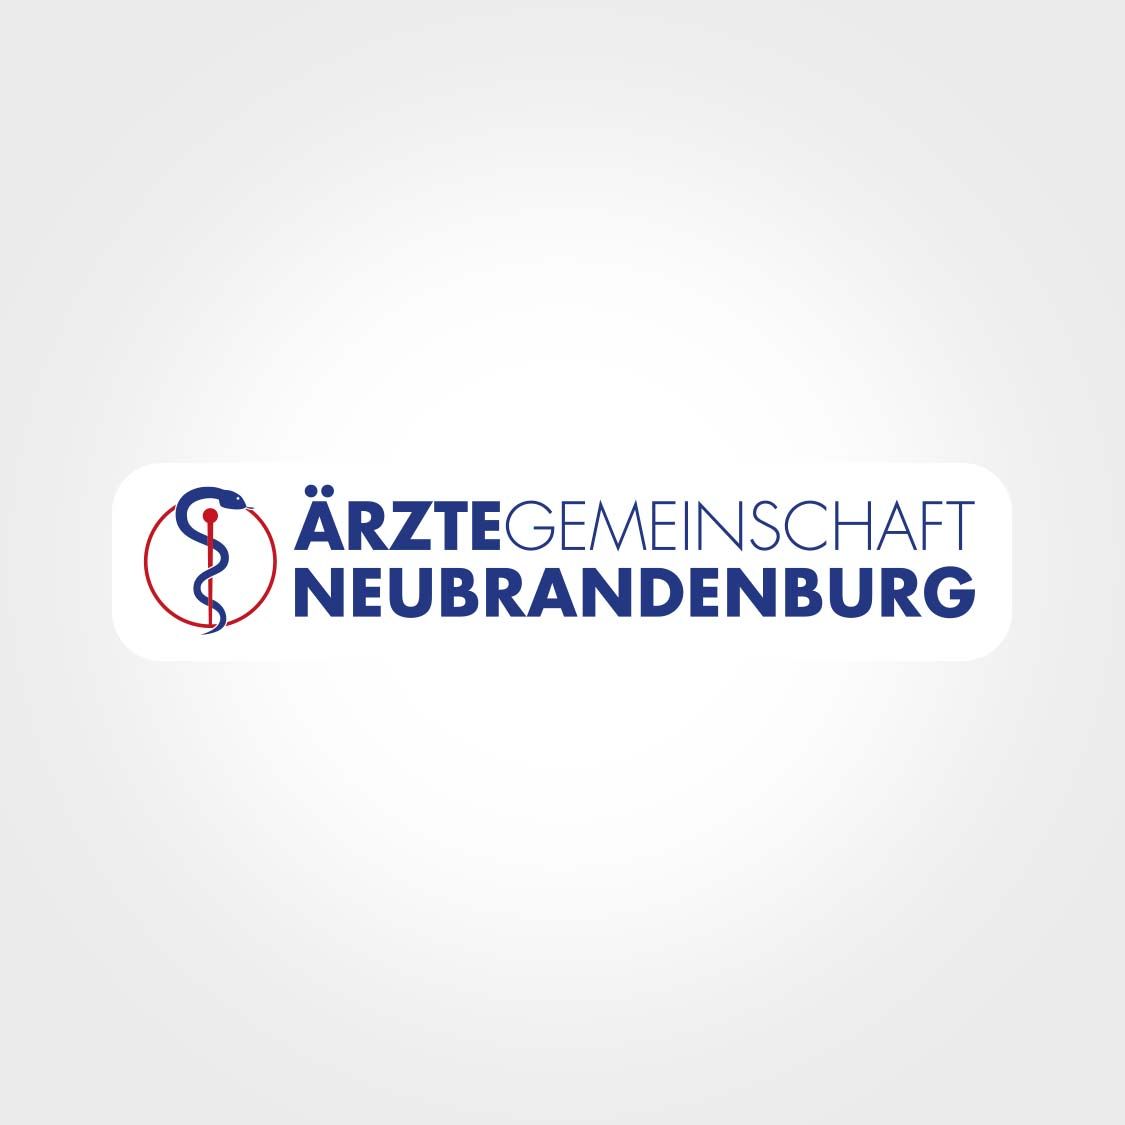 Ansicht des Logos der Ärztegemeinschaft Neubrandenburg.